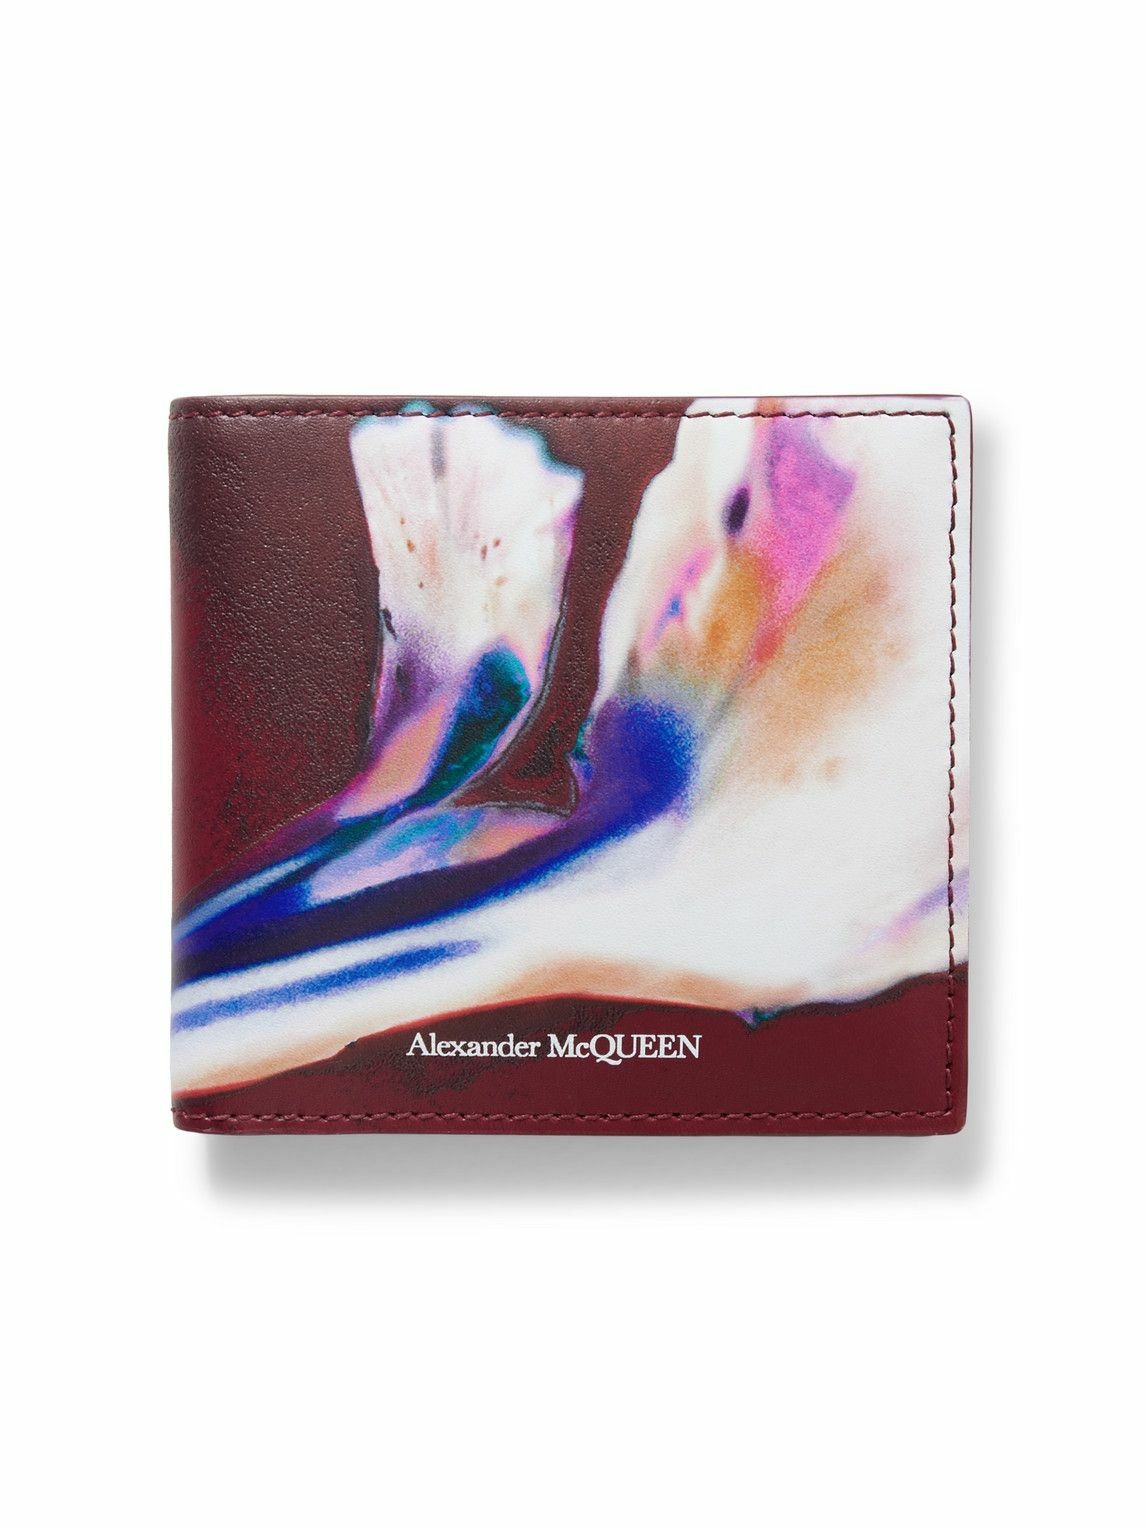 Alexander McQueen - Printed Leather Billfold Wallet Alexander McQueen